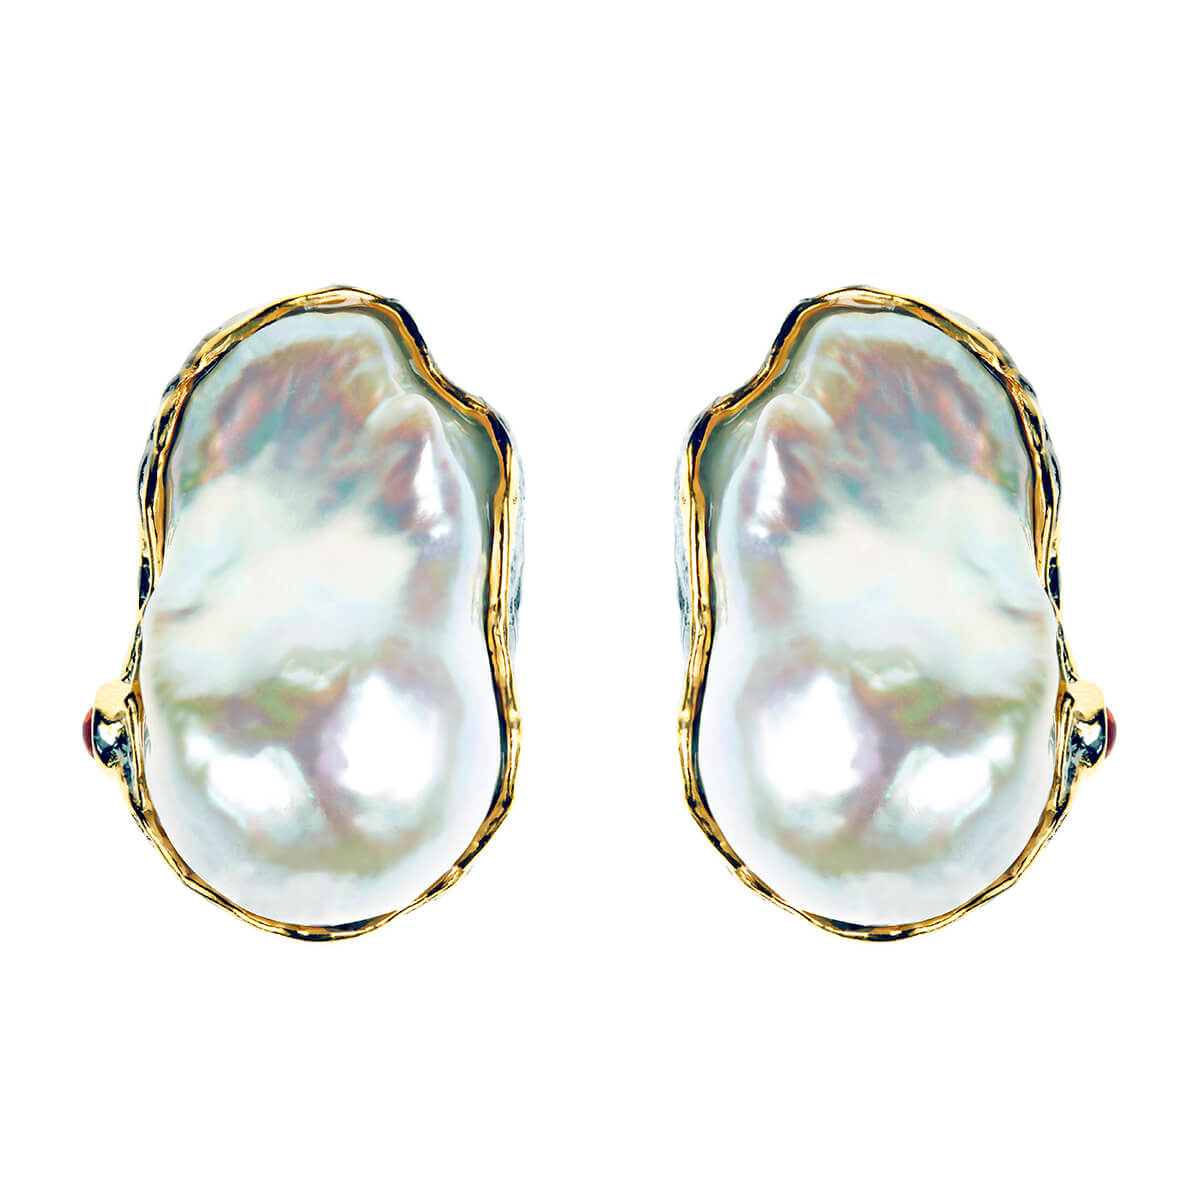 Geetu earrings